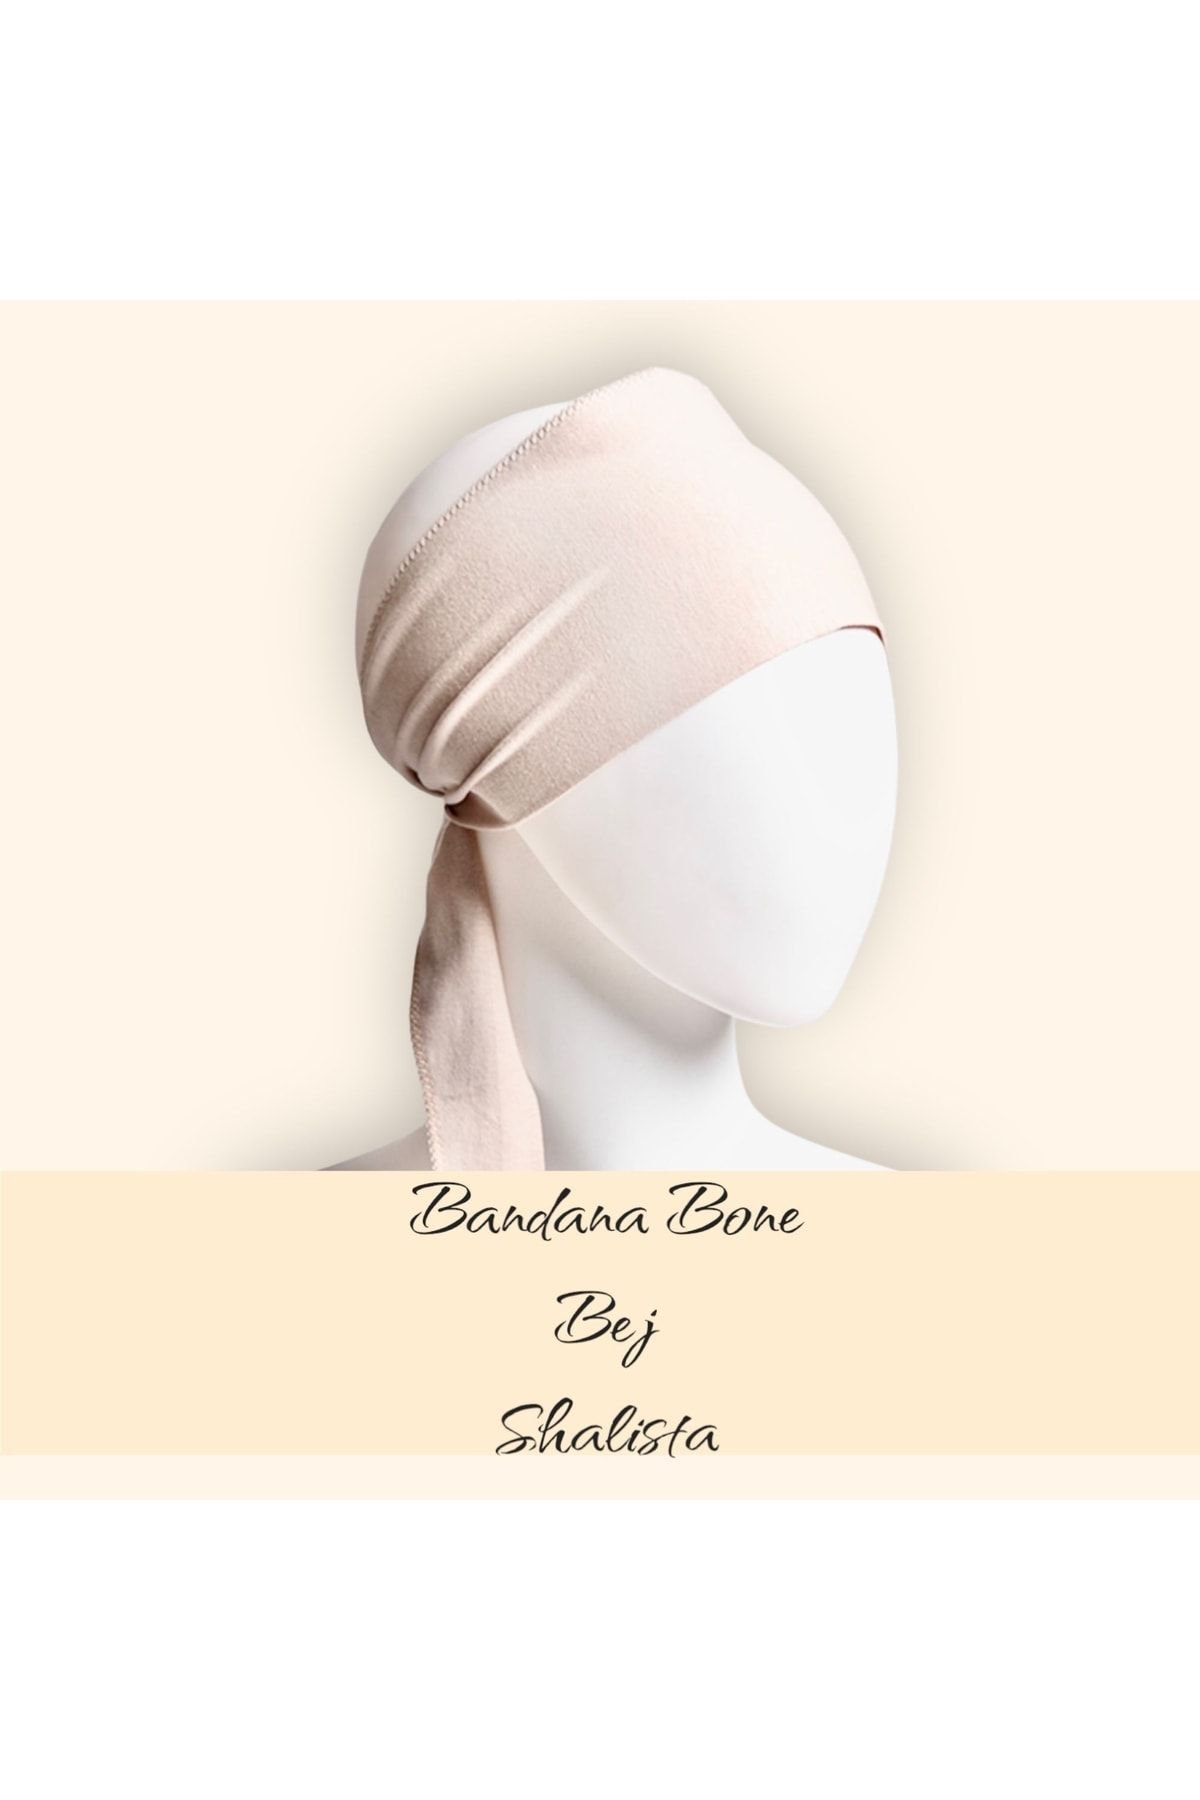 Shalista 5 Al 4 Öde Bandana Bone Bej Rengi Şaşırtıcı Rahatlık